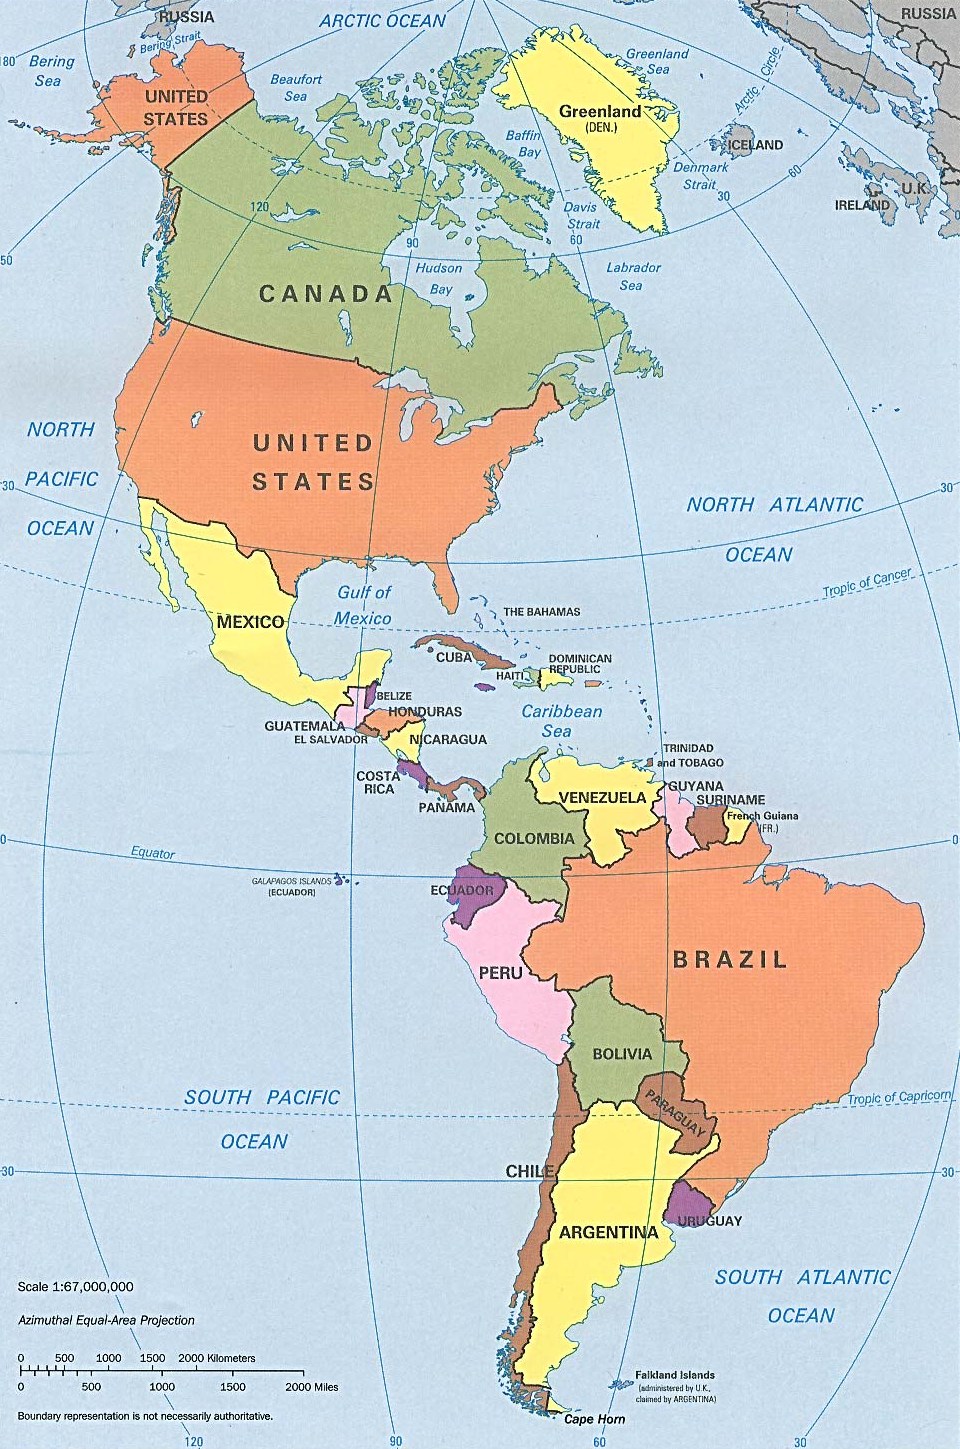 Quan sát Bản đồ Các nước trên thế giới, hãy: Cho biết Hoa Kì giáp với những quốc gia và những đại dương nào?